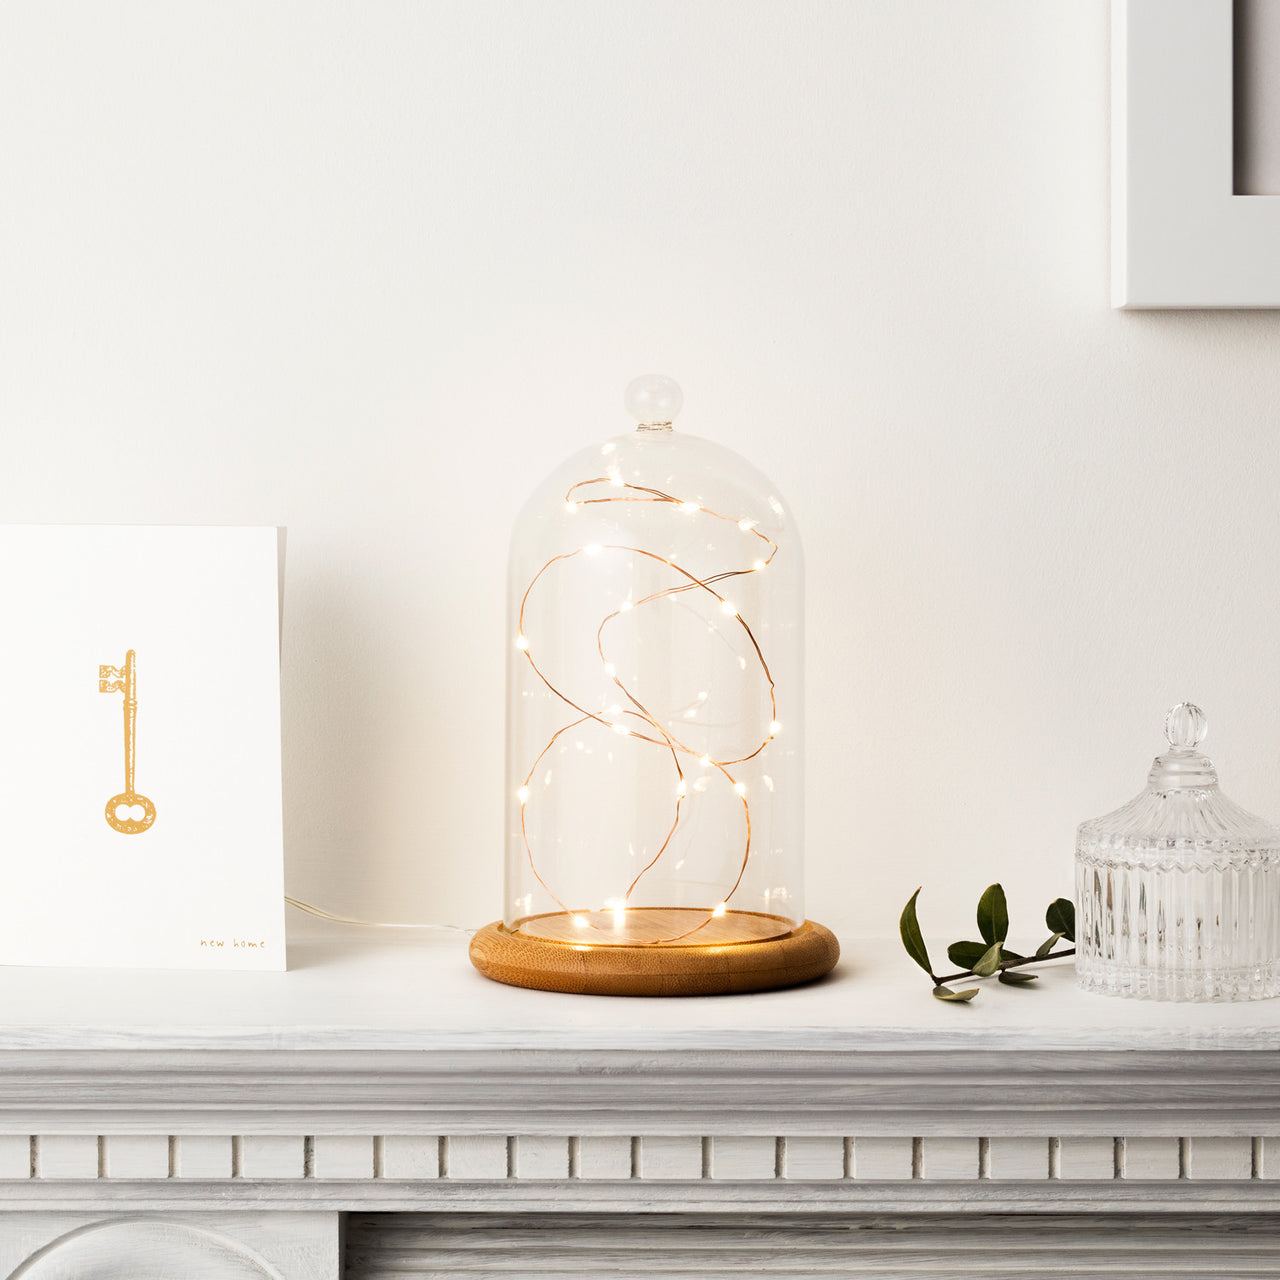 Glasglocke mit Holzteller und Micro Lichterkette auf weißer Ablage.